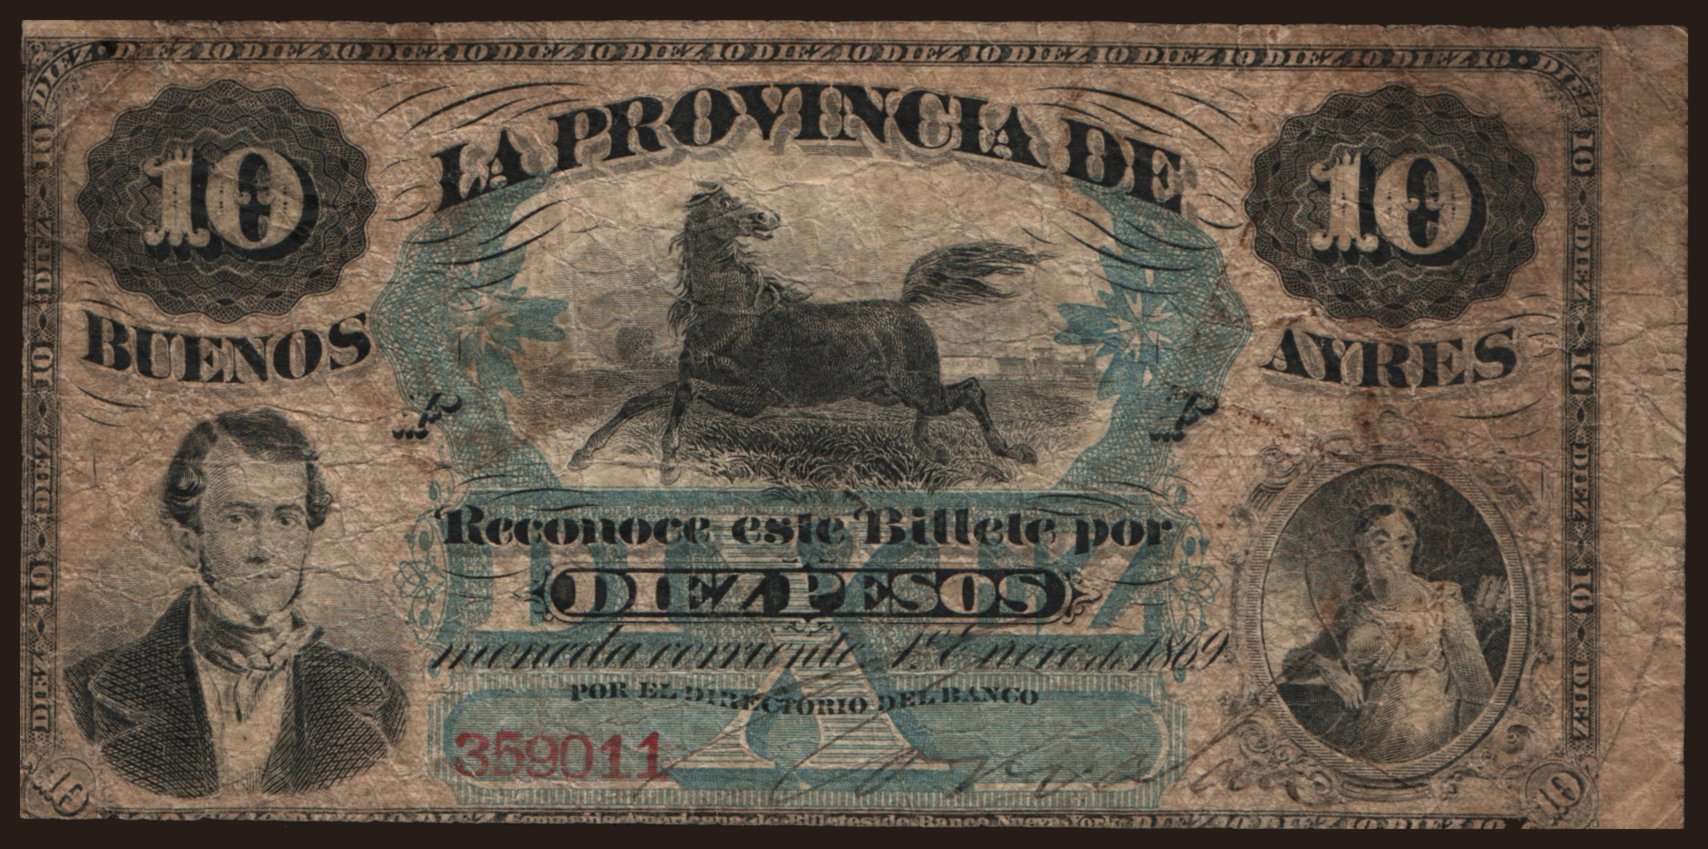 Buenos Ayres, 10 pesos, 1869